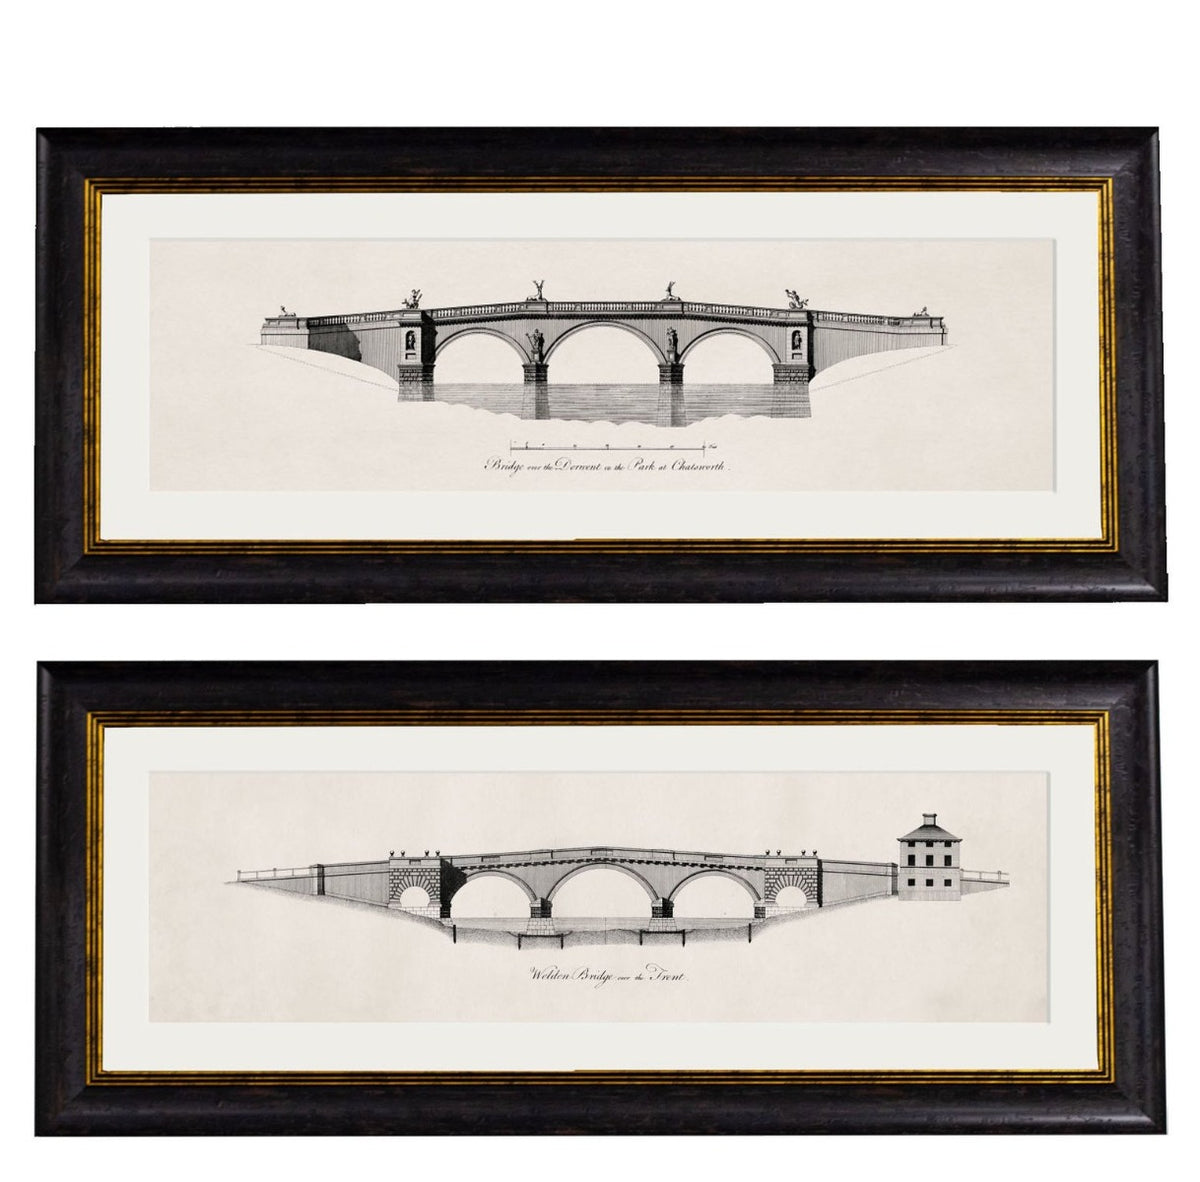 C.1737 Architectural Elevations of Bridges James Paine